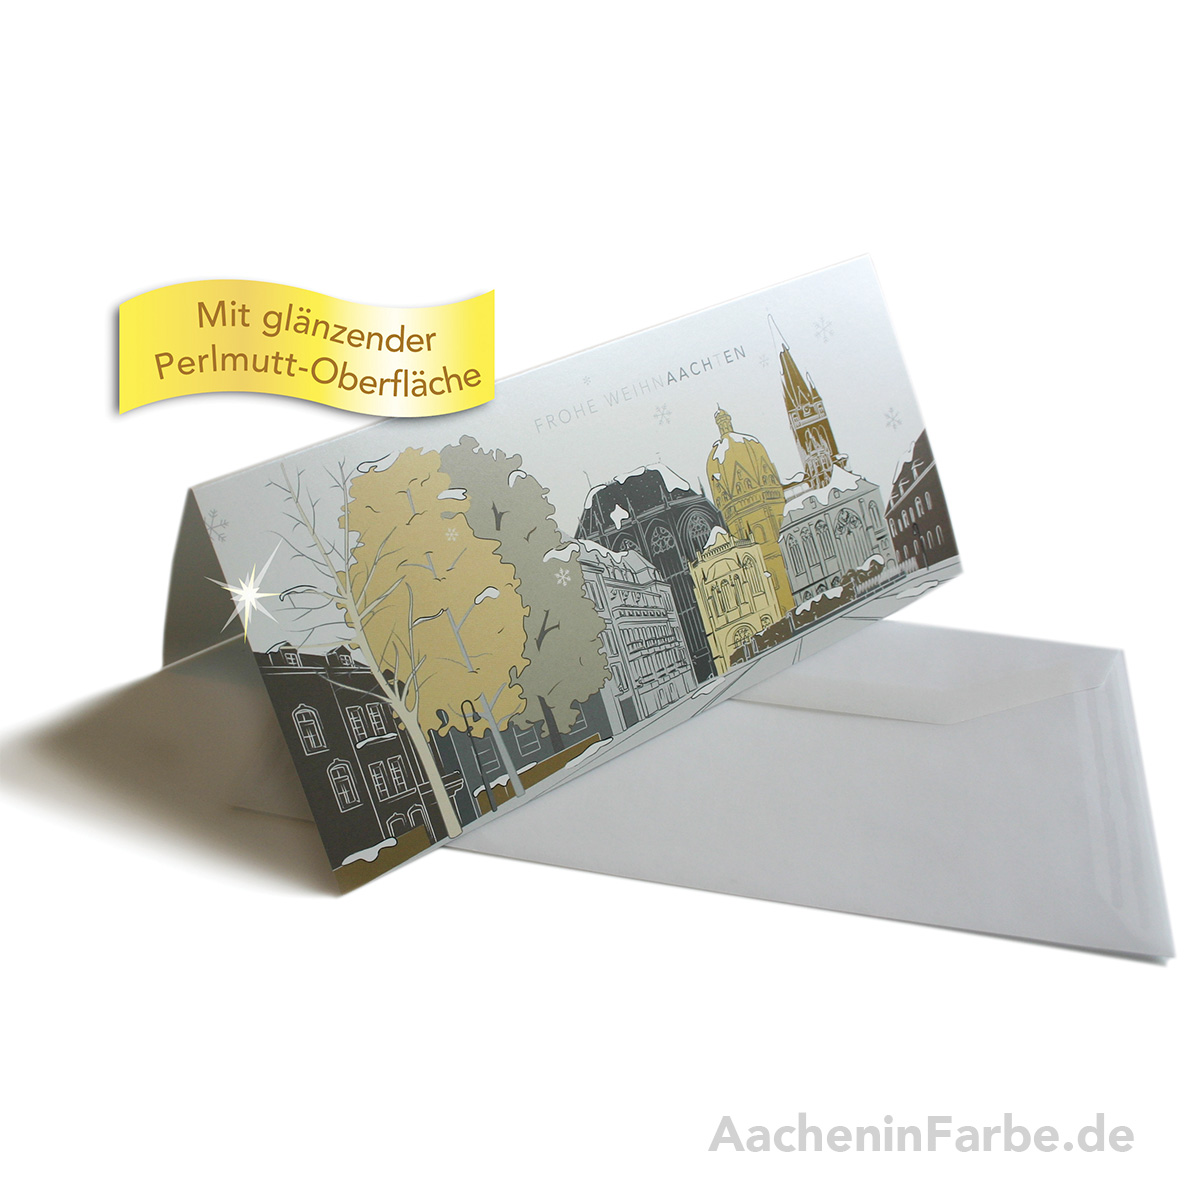 Grußkarte "Frohe WeihnAACHtEN", Aachener Dom, pastell (Perlmutt)